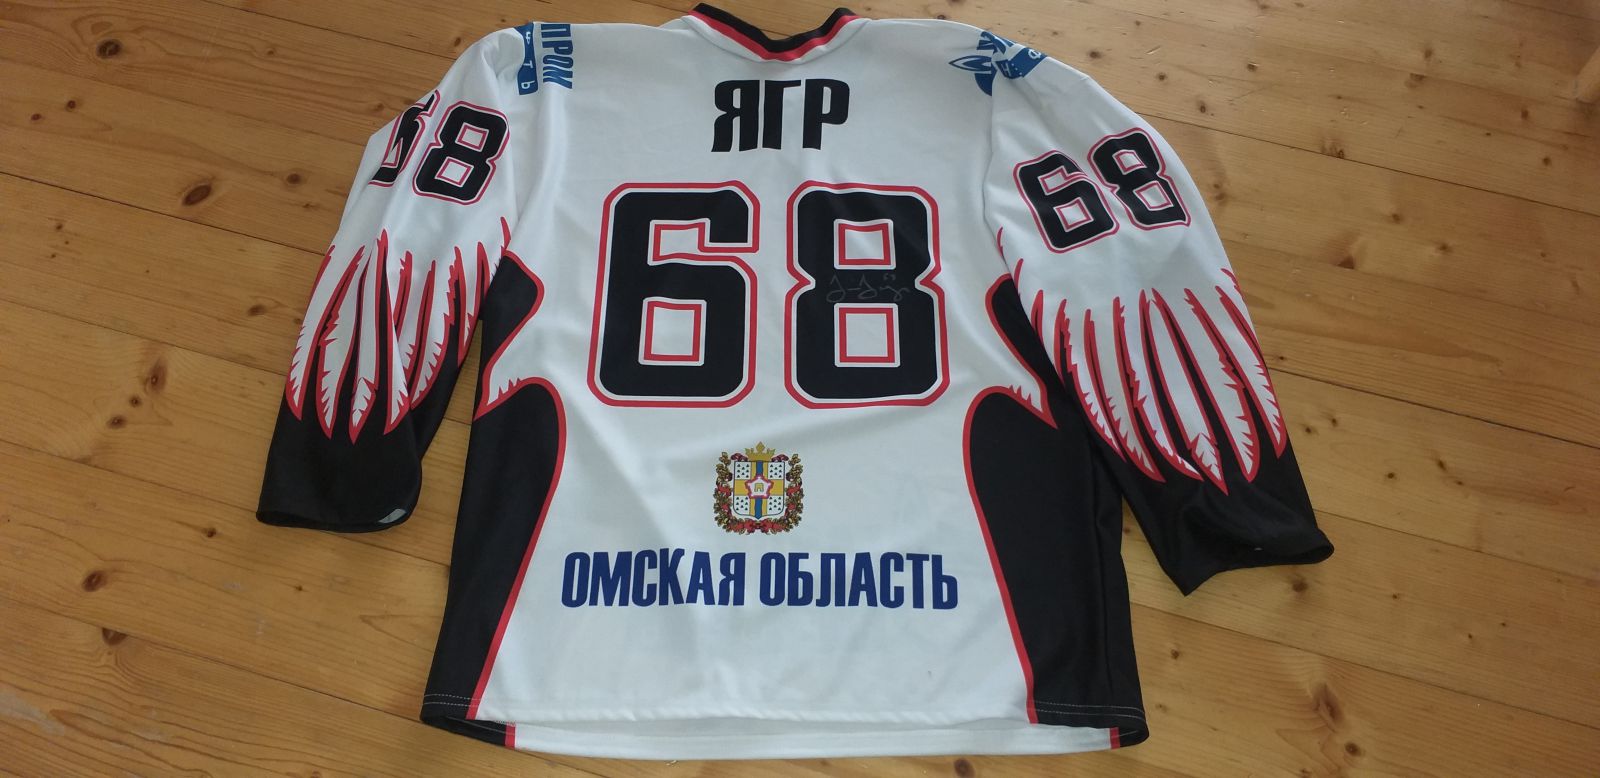 Oficiální replika dresu  Jágra z Avangardu Omsk fotka